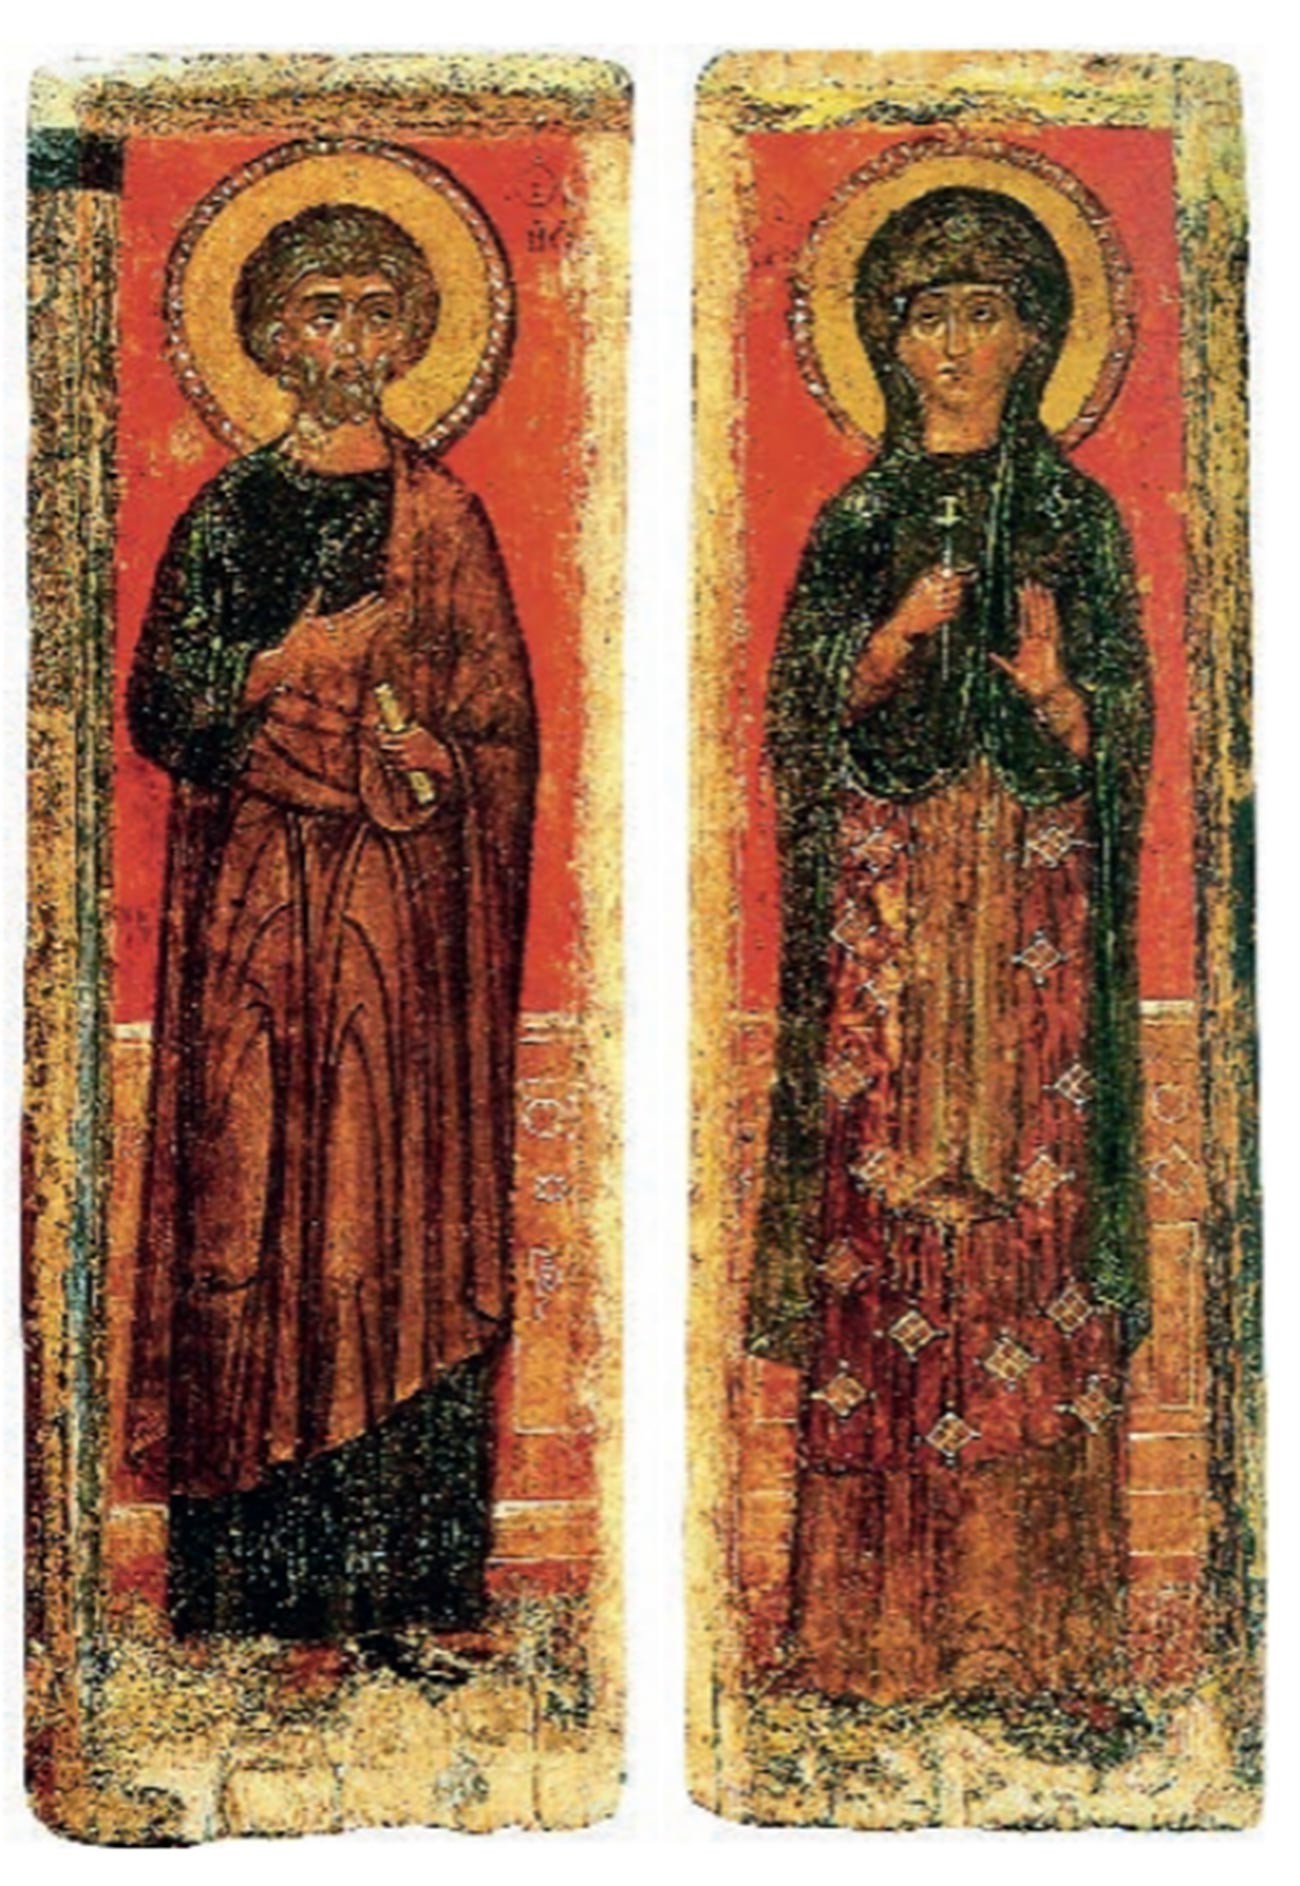 Ikona apostola Petra i nepoznatog velikomučenika